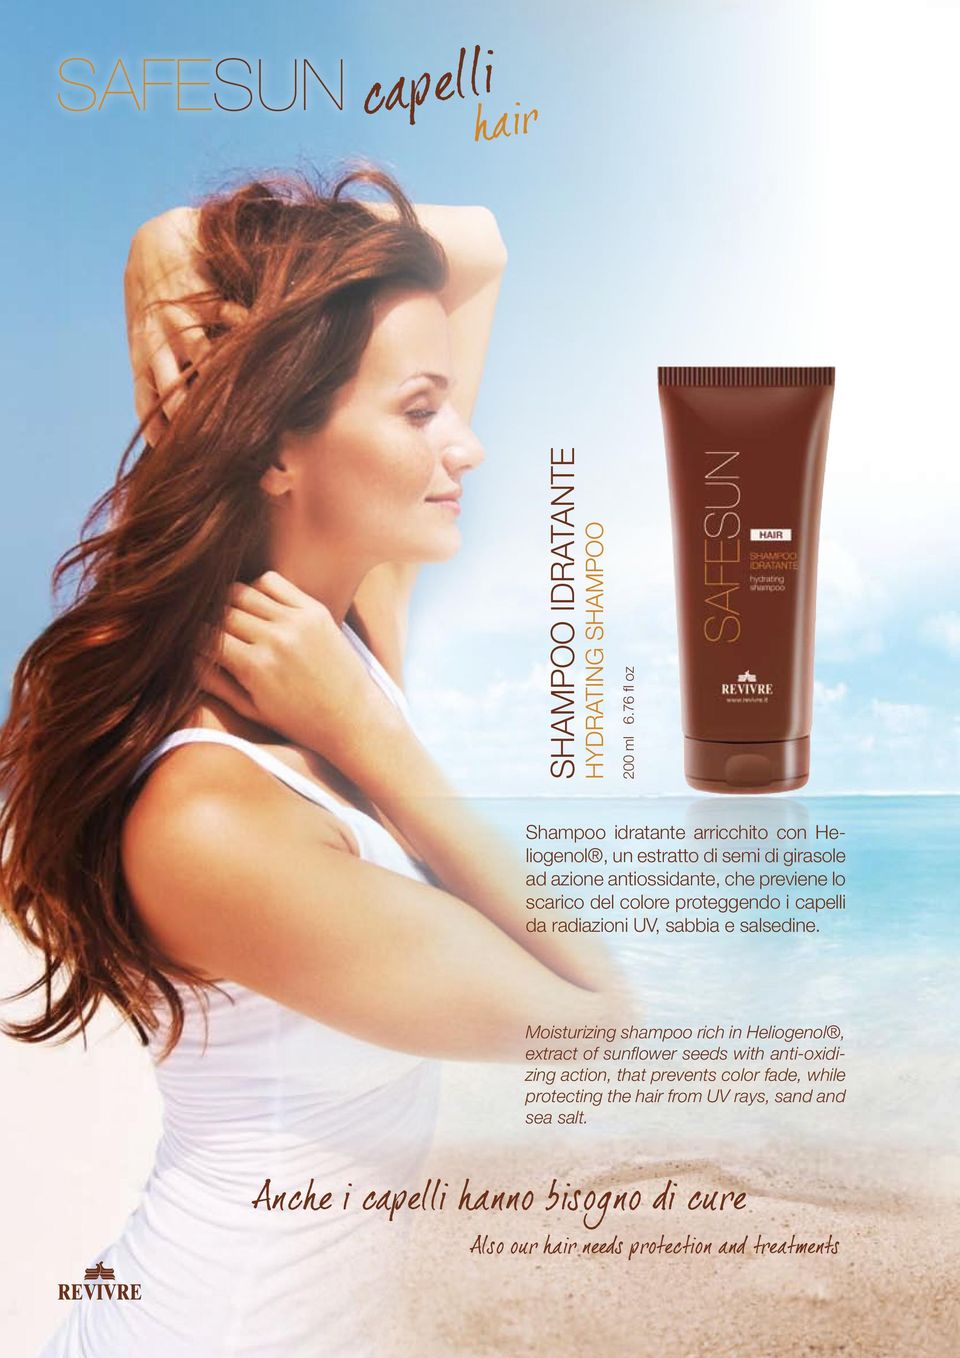 antiossidante, che previene lo scarico del colore proteggendo i capelli da radiazioni UV, sabbia e